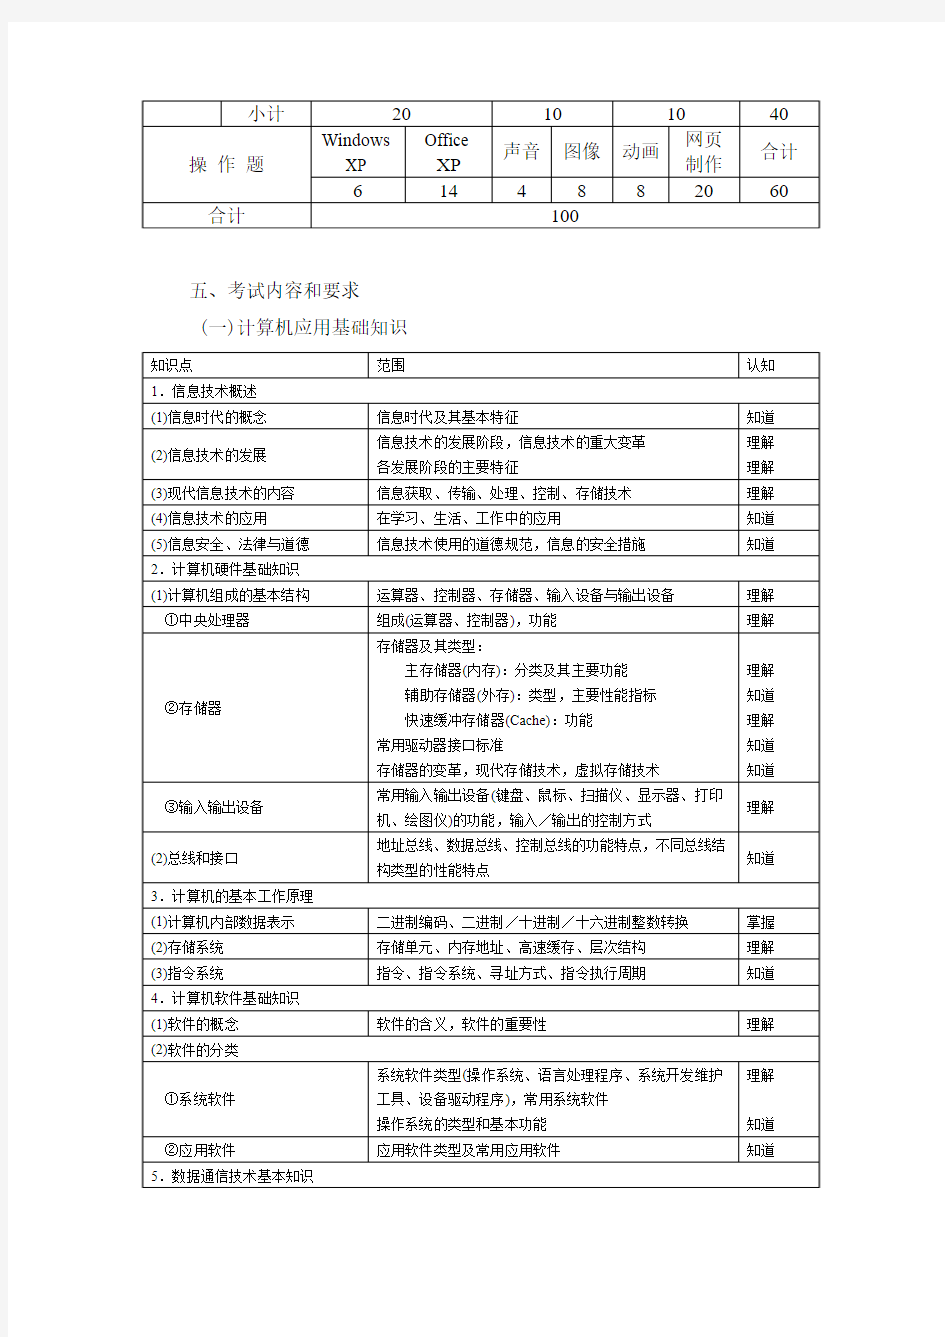 上海市高等学校计算机等级考试考试大纲(2009年修订)